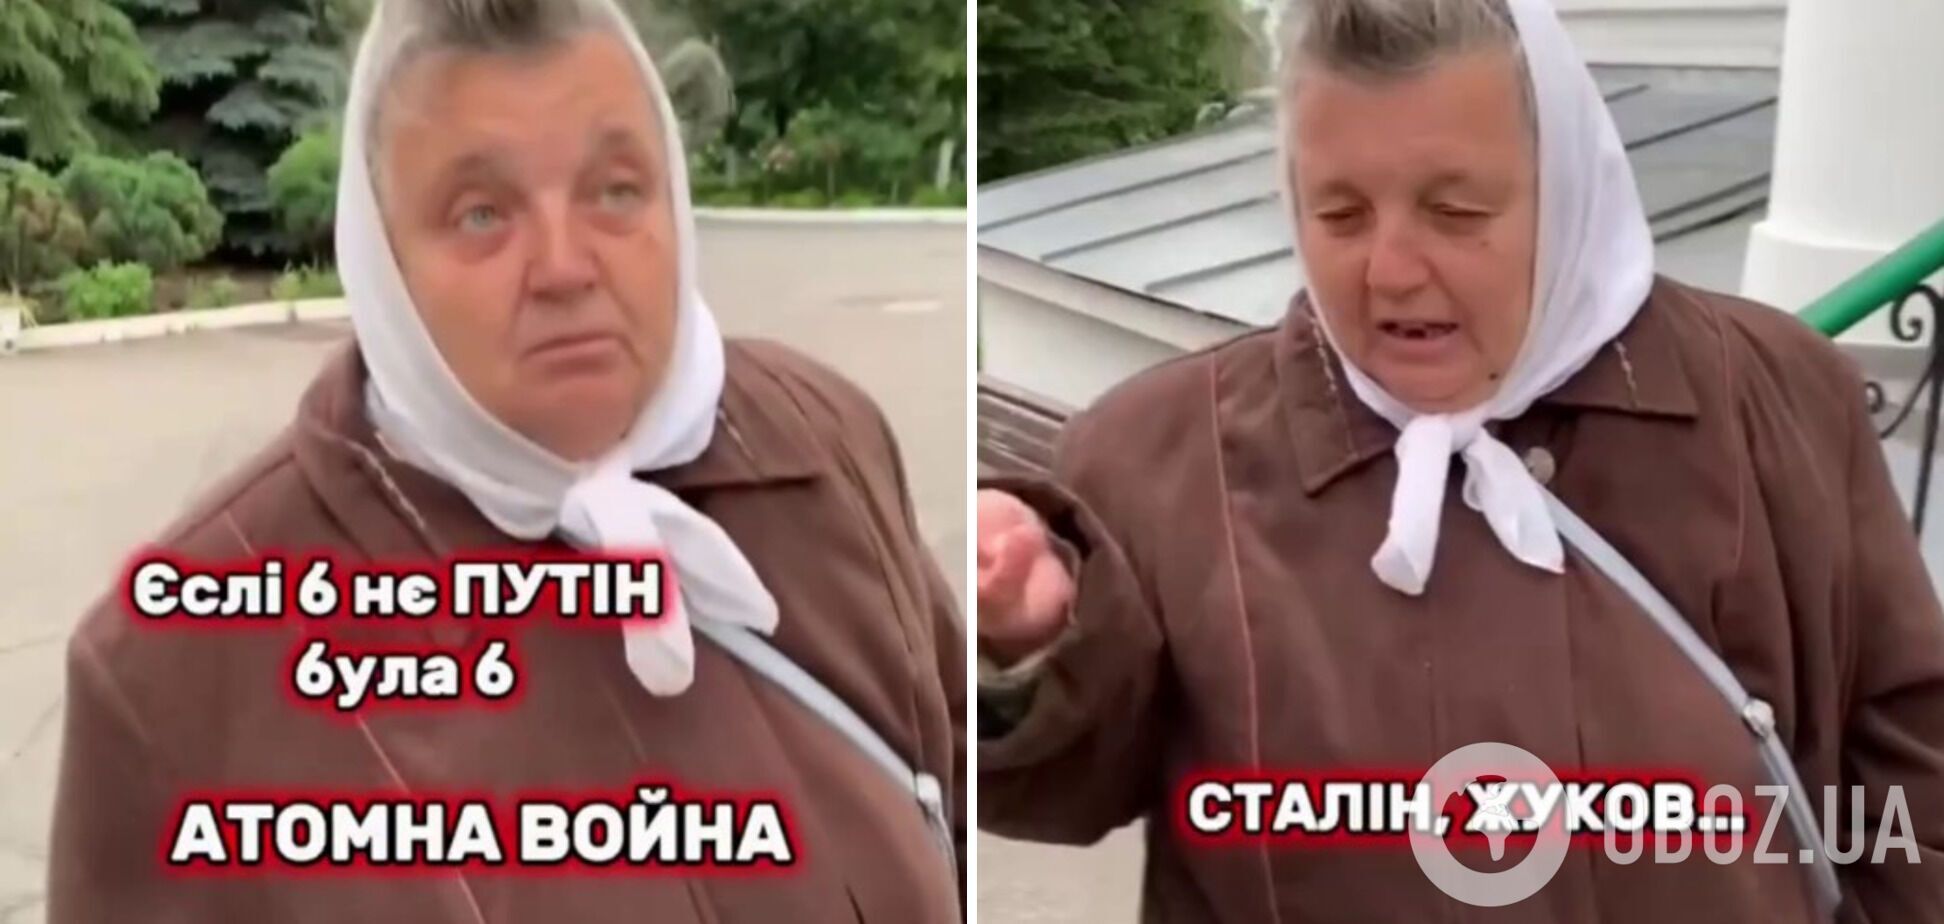 "Если бы не Путин, была бы атомная война": верующие УПЦ МП отметились скандальными заявлениями и назвали своих "героев". Видео